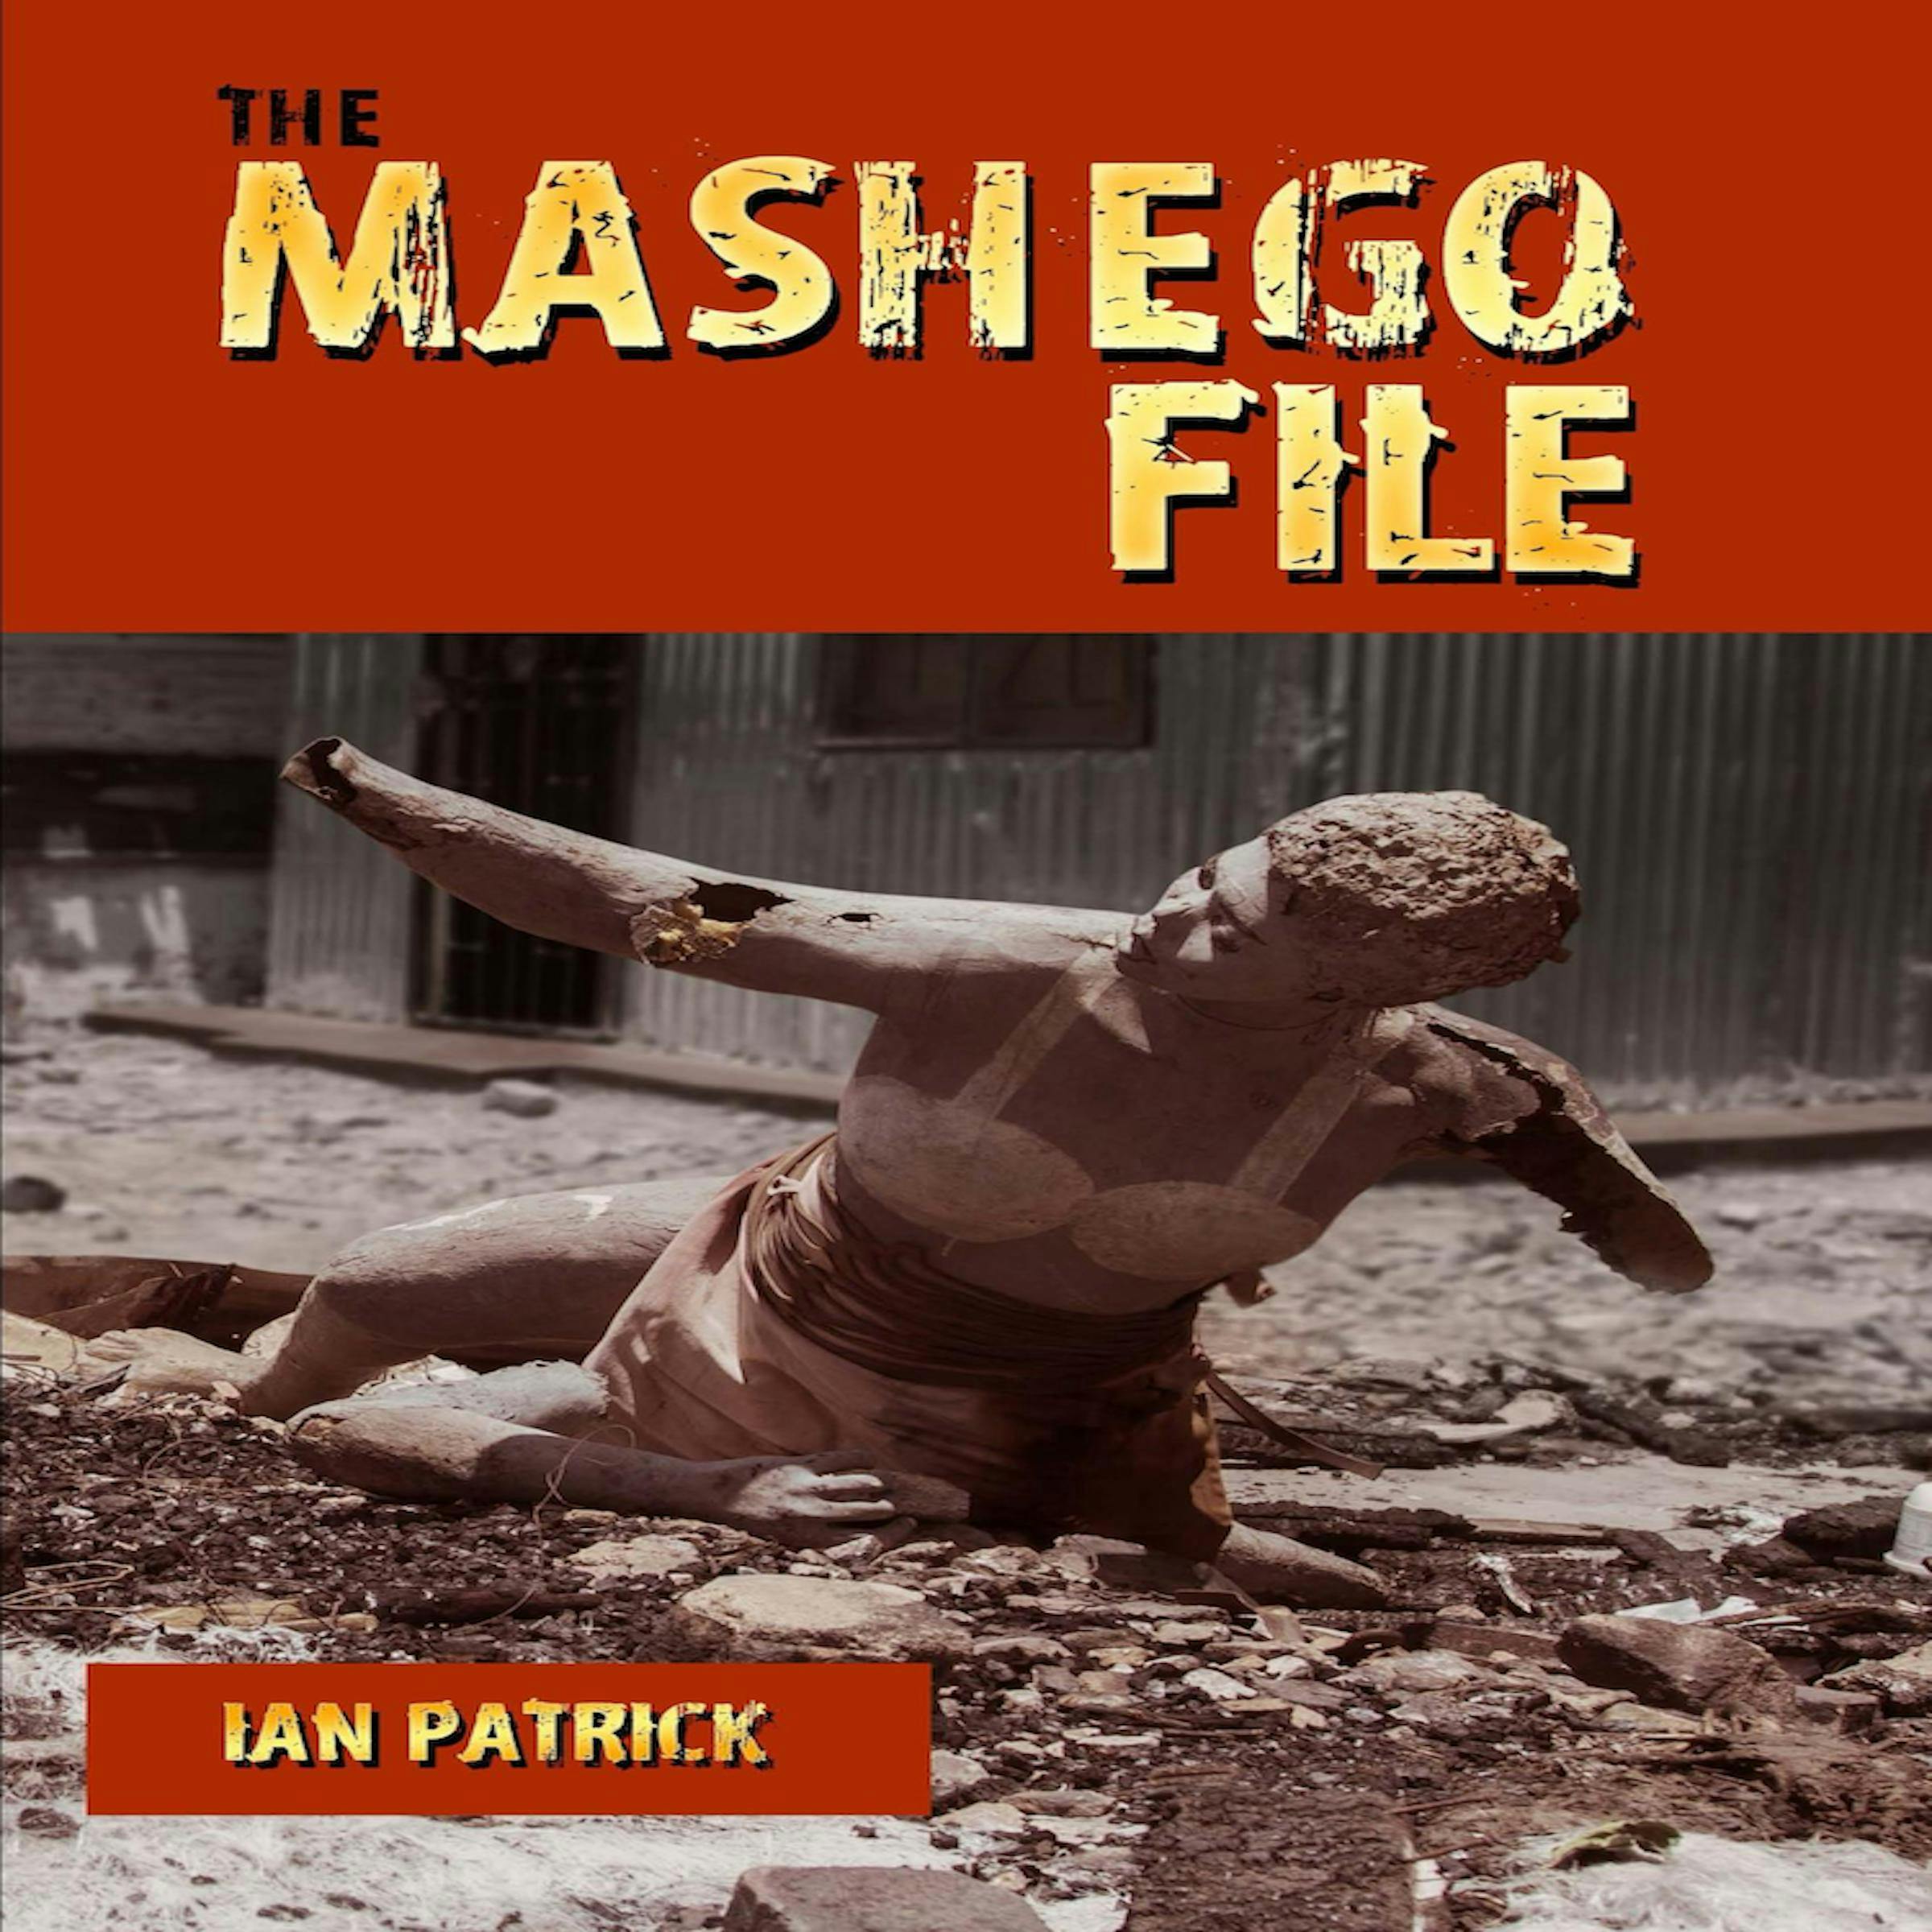 The Mashego File - Ian Patrick